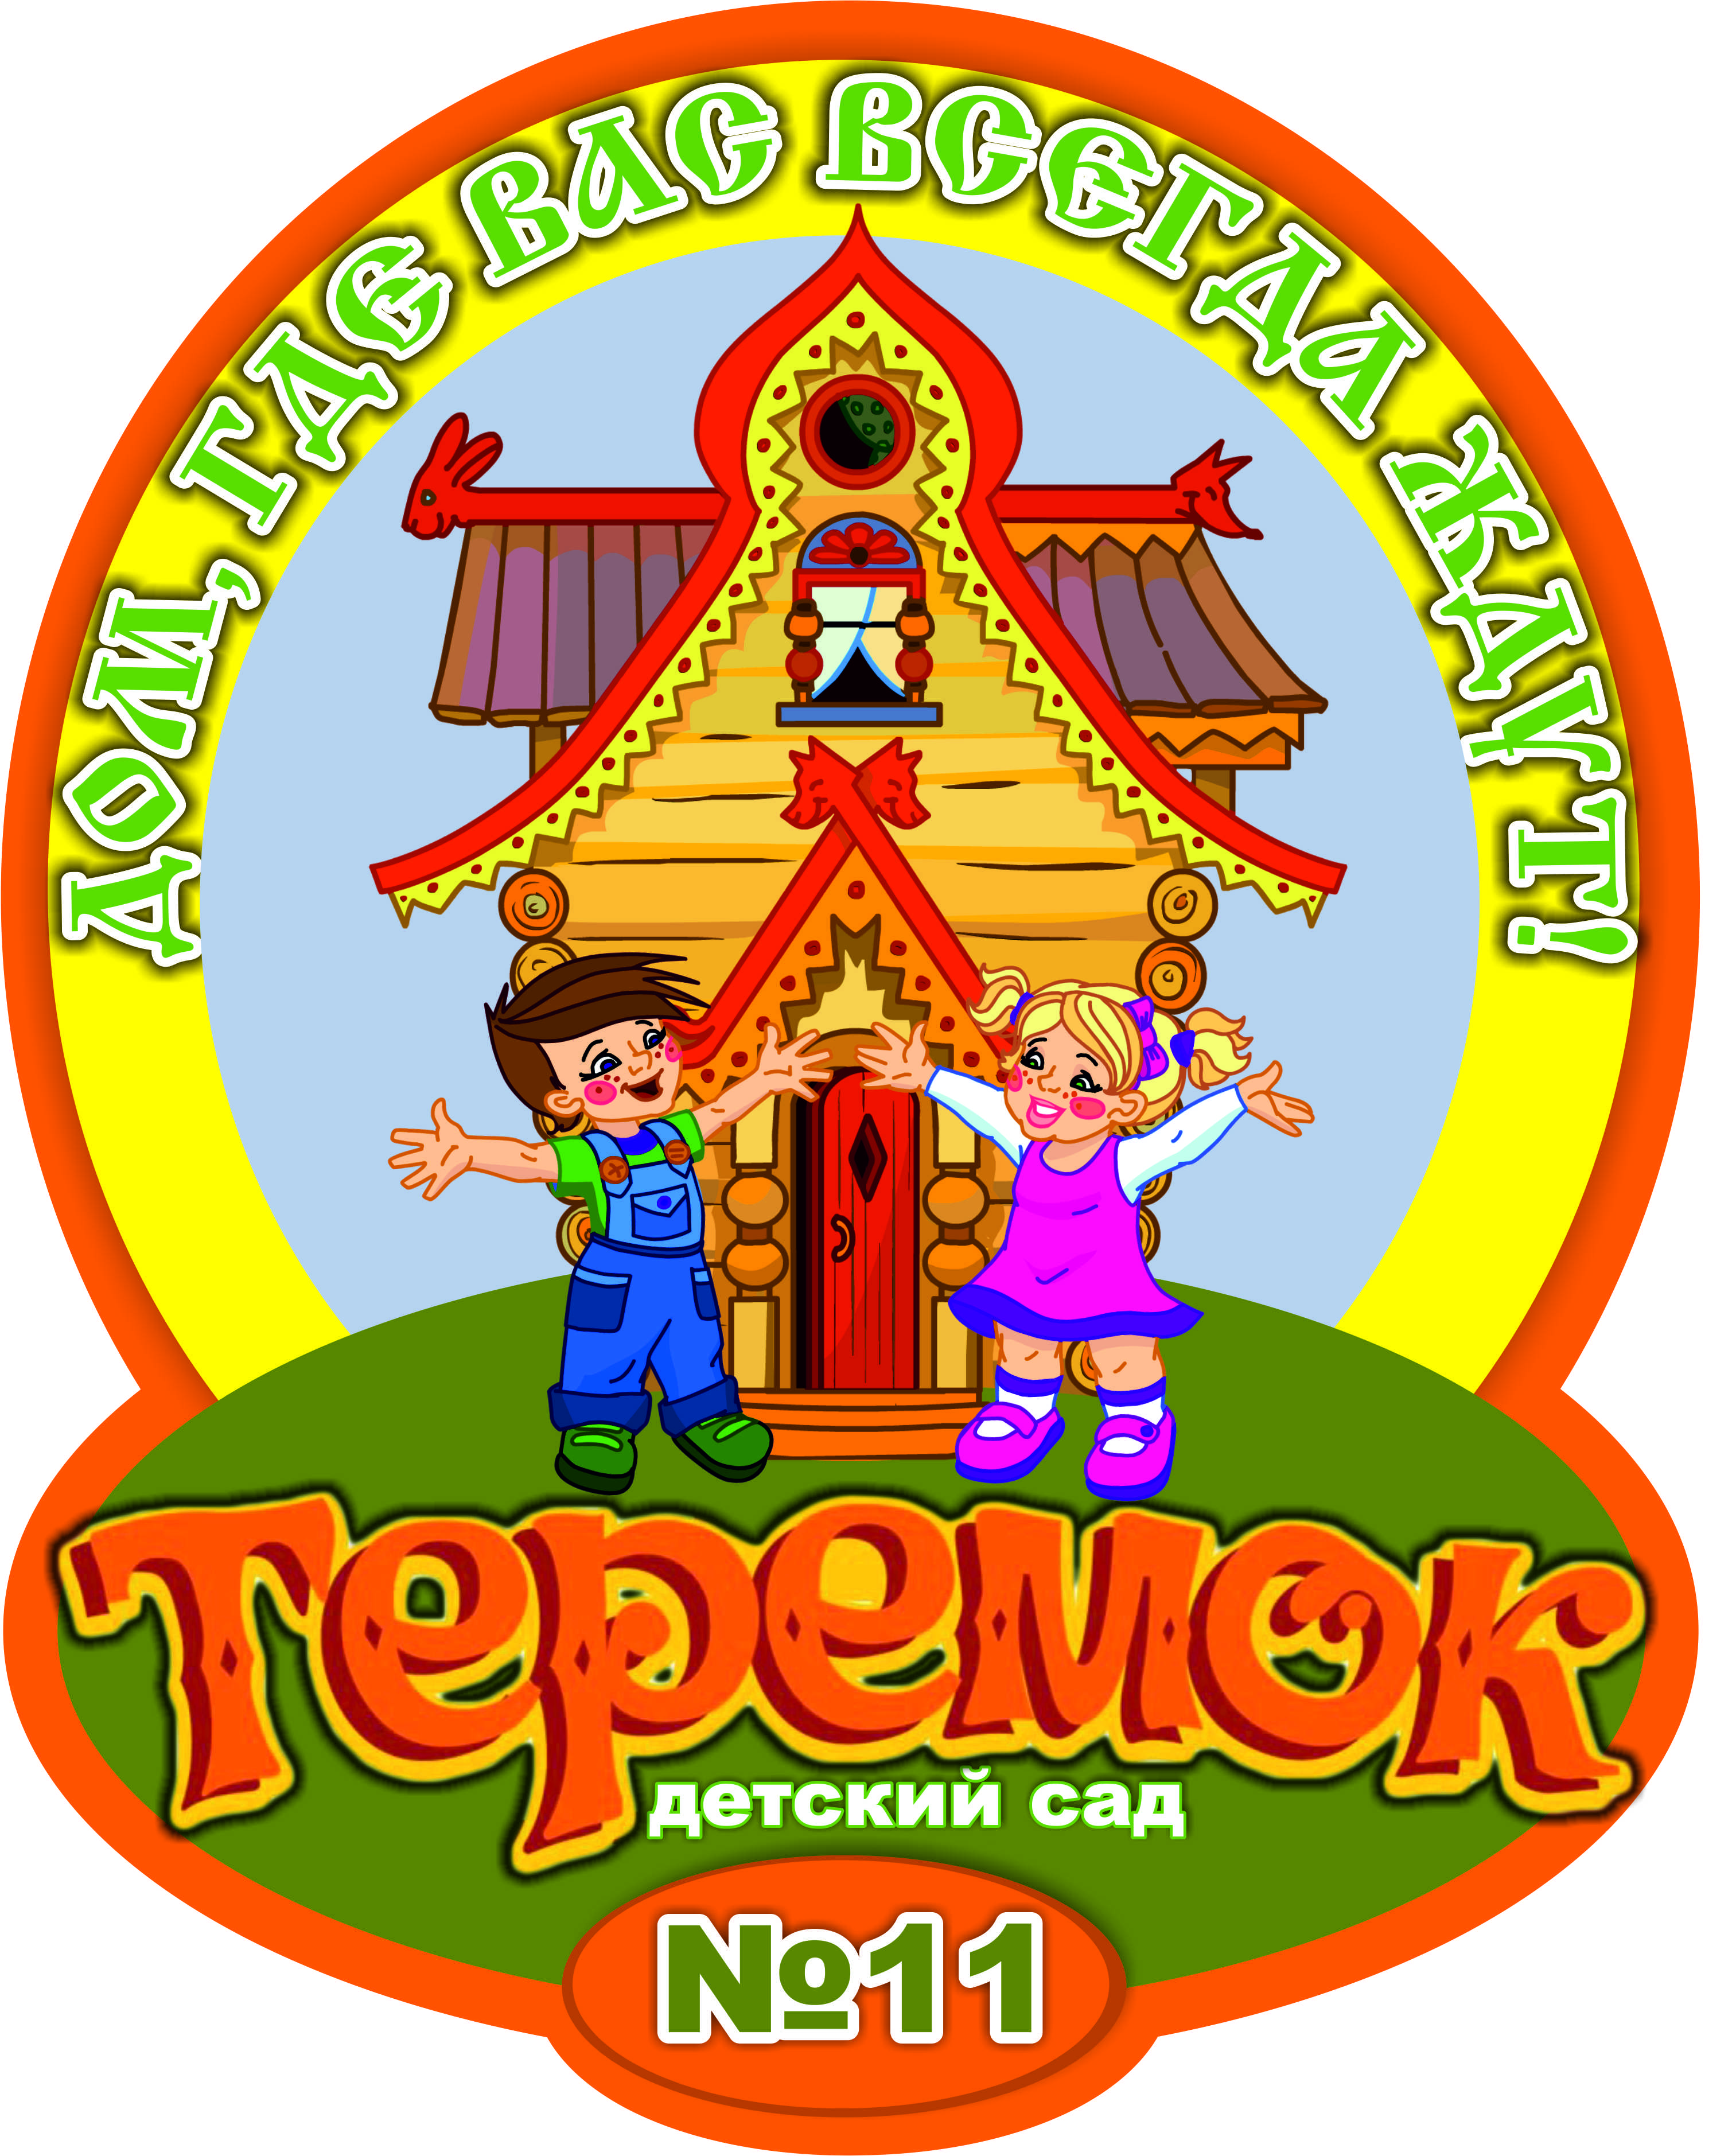 Логотип Теремок детский сад Краснодар